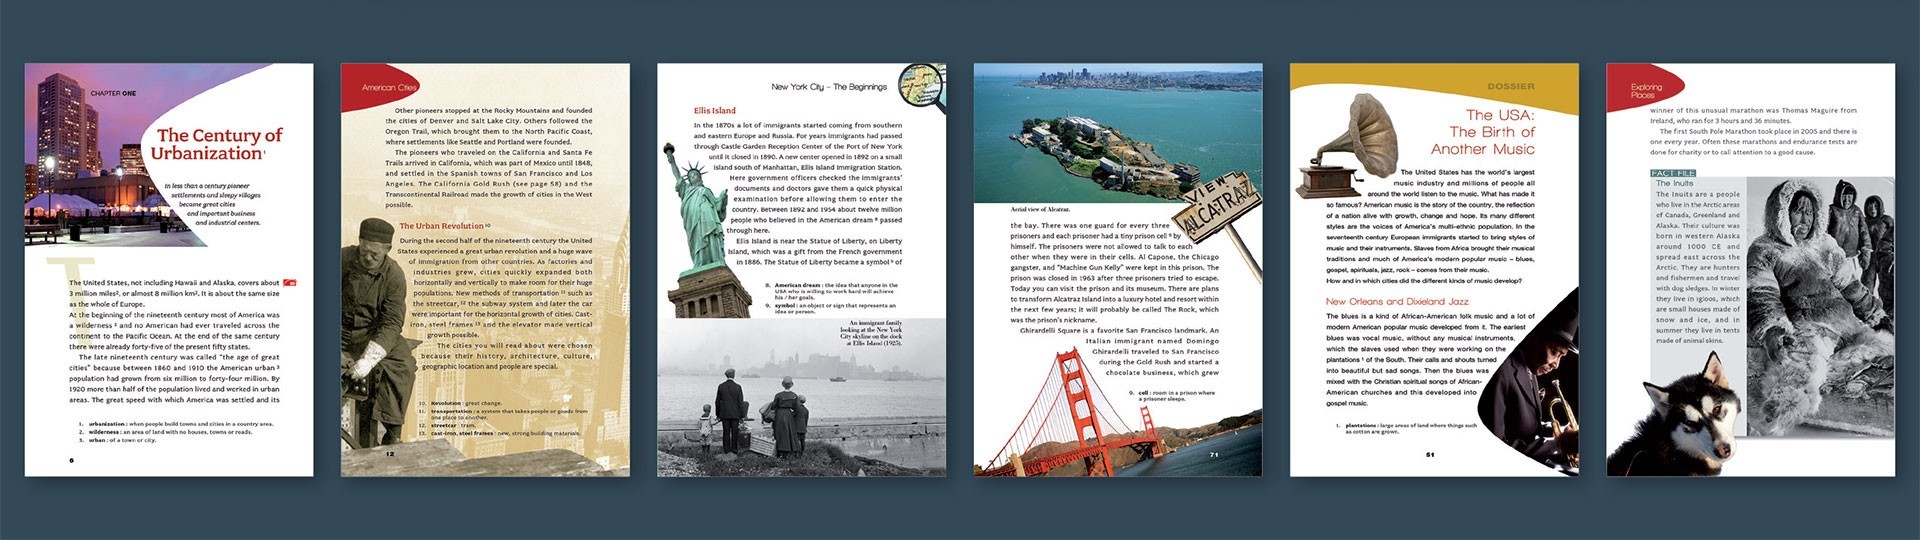 Progettazione editoriale e grafica | Progetti grafici e editoriali | Immagine coordinata grafica